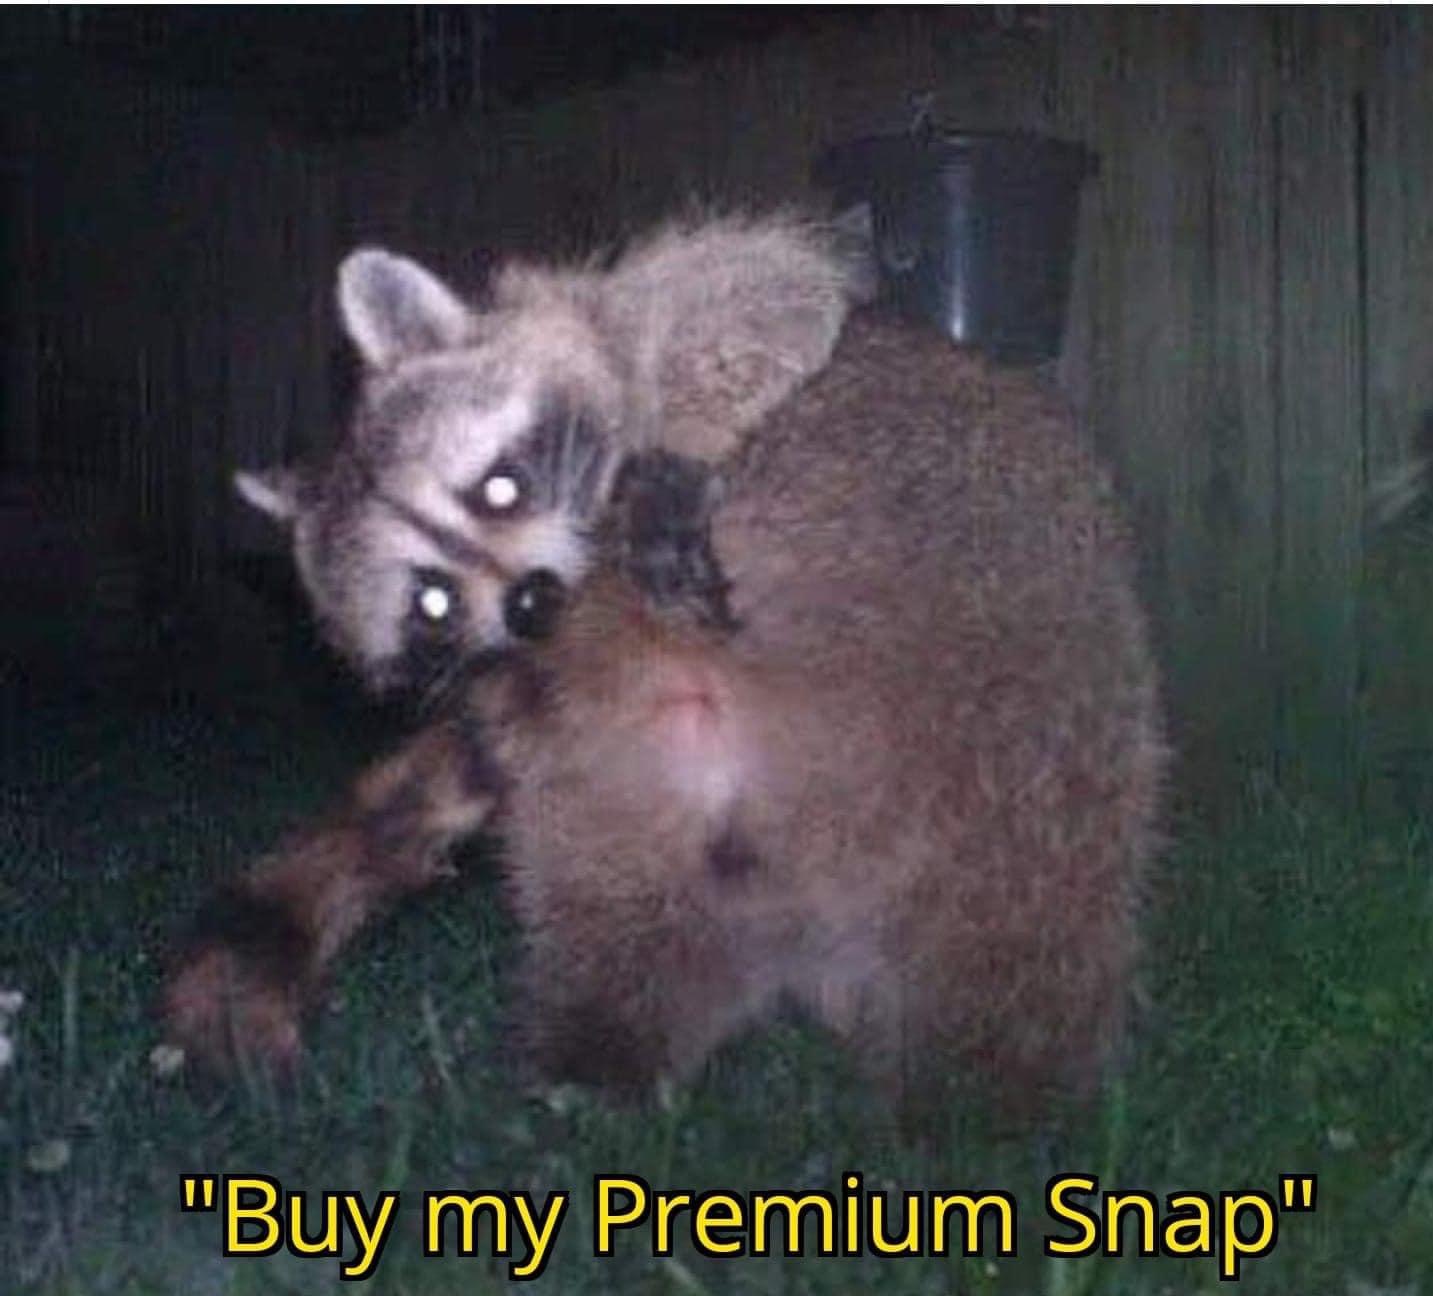 viverridae - "Buy my Premium Snap"